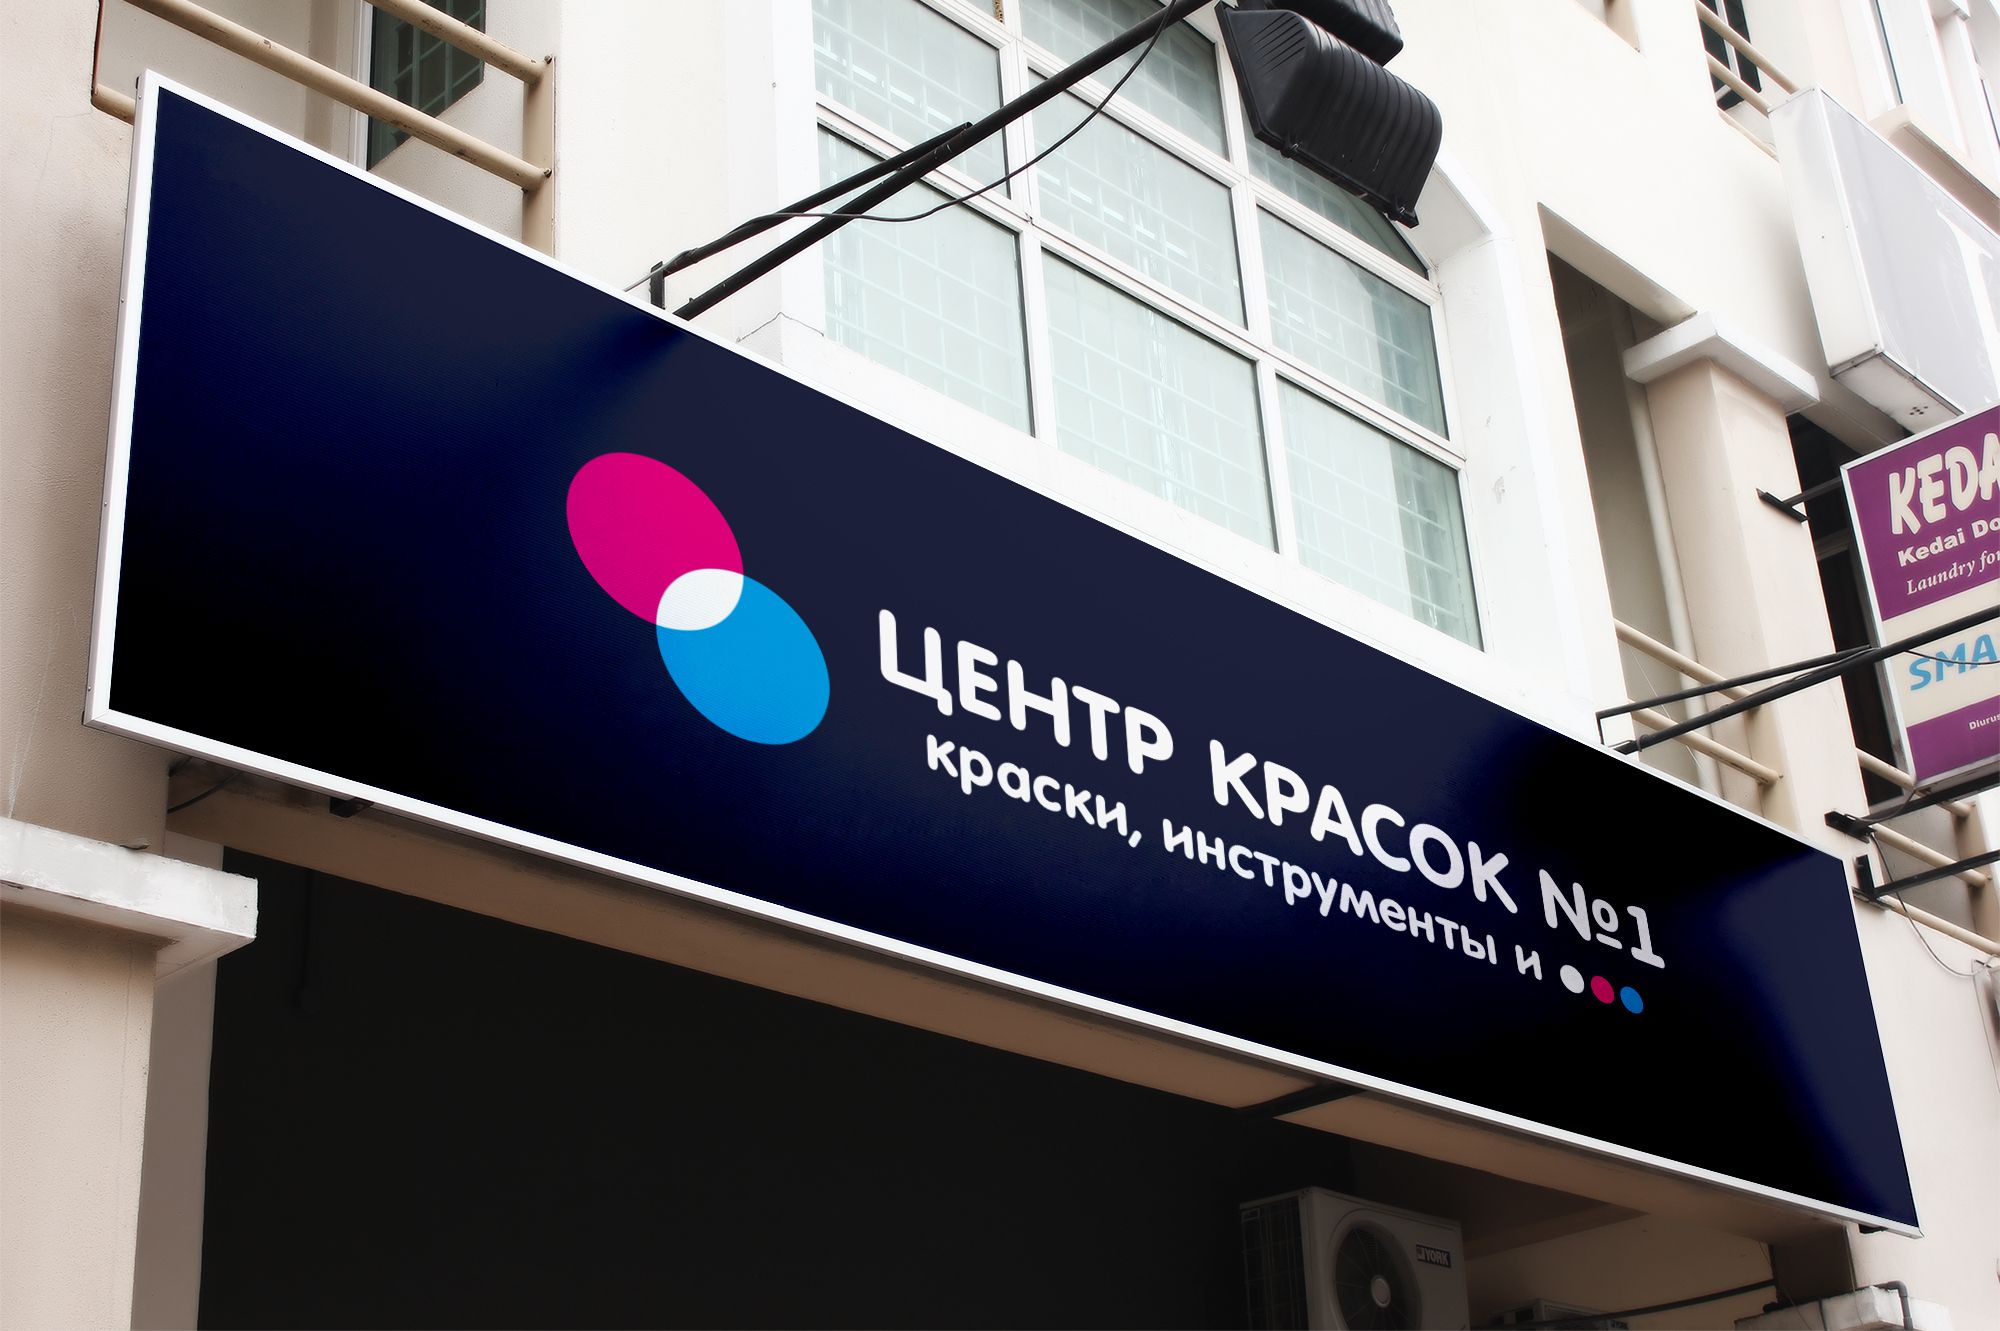 Логотип для ЦЕНТР КРАСОК №1 - дизайнер markosov